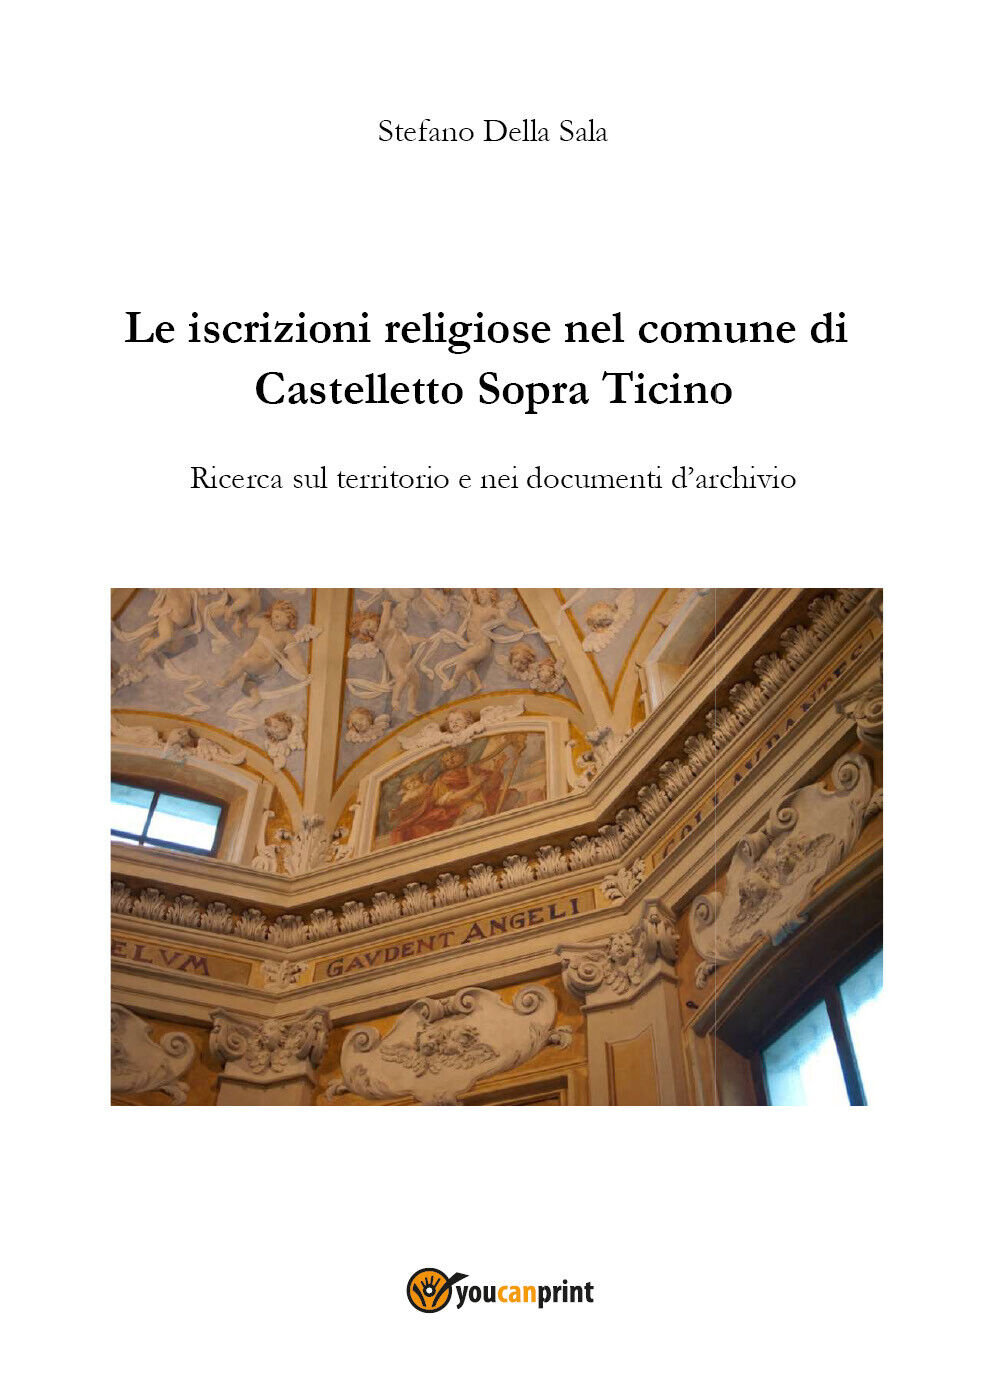 Le iscrizioni religiose nel comune di Castelletto Sopra Ticino di Stefano Della 